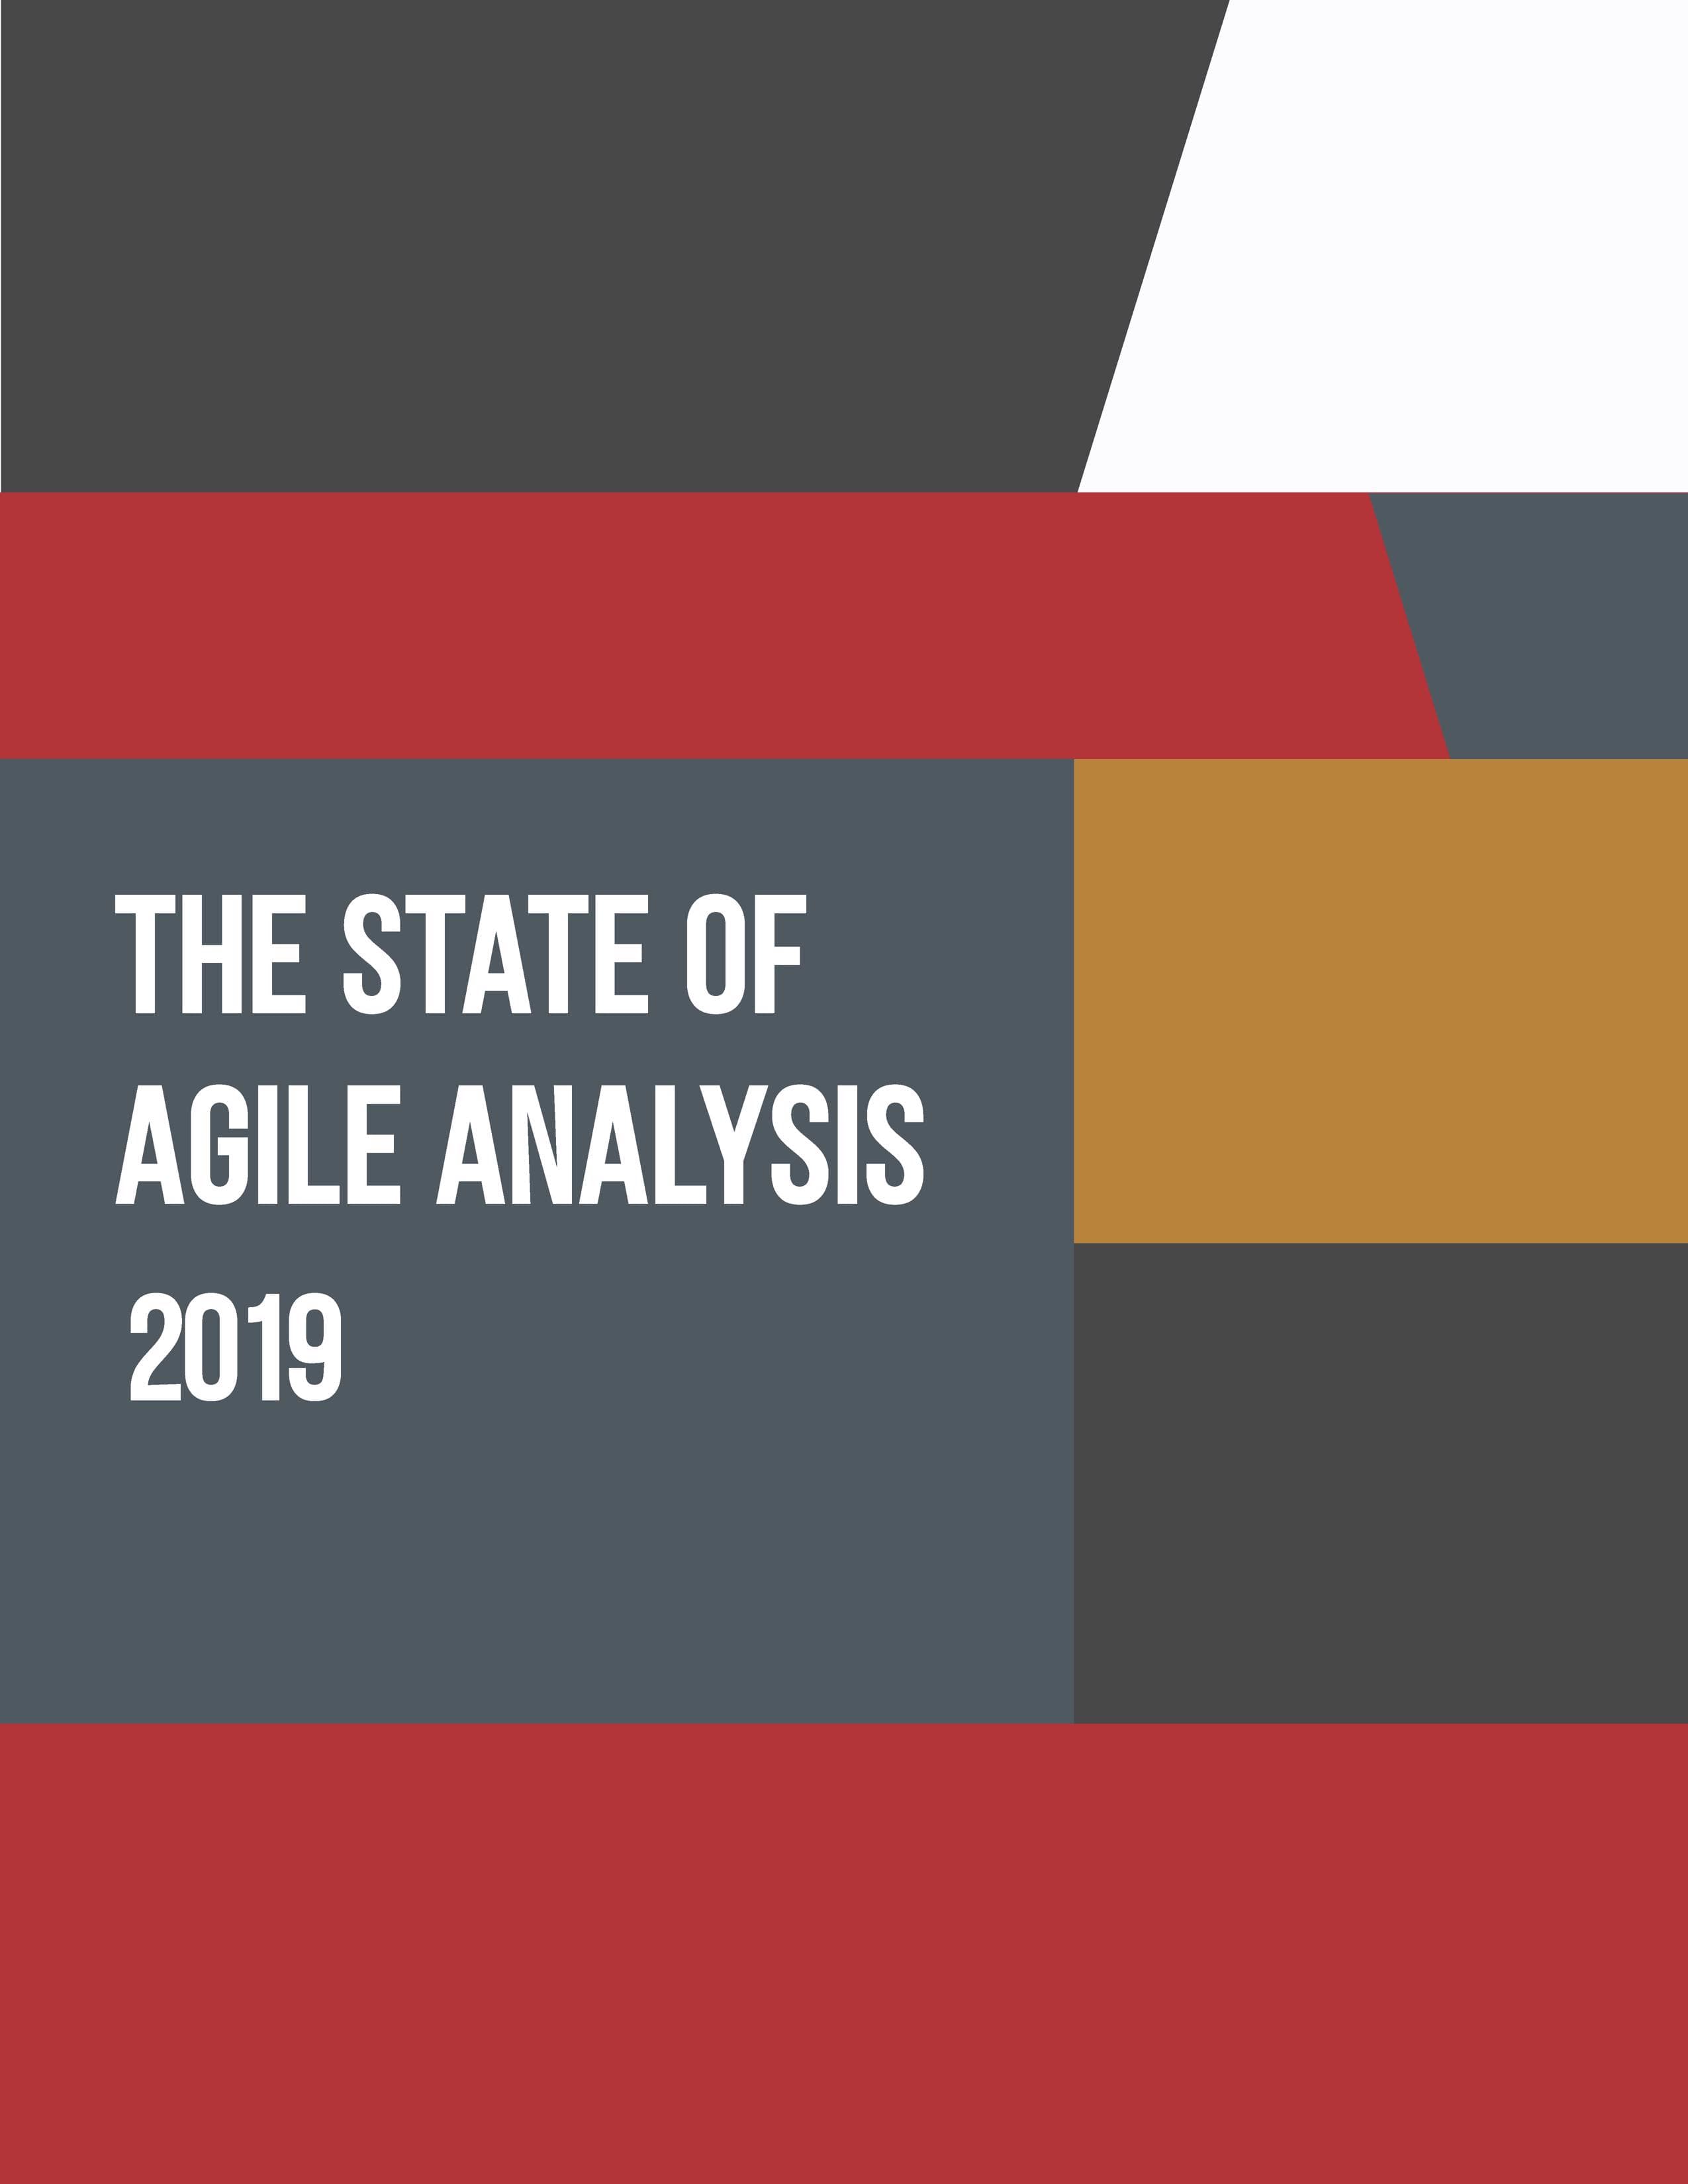 Agile Analysis & Business Agility